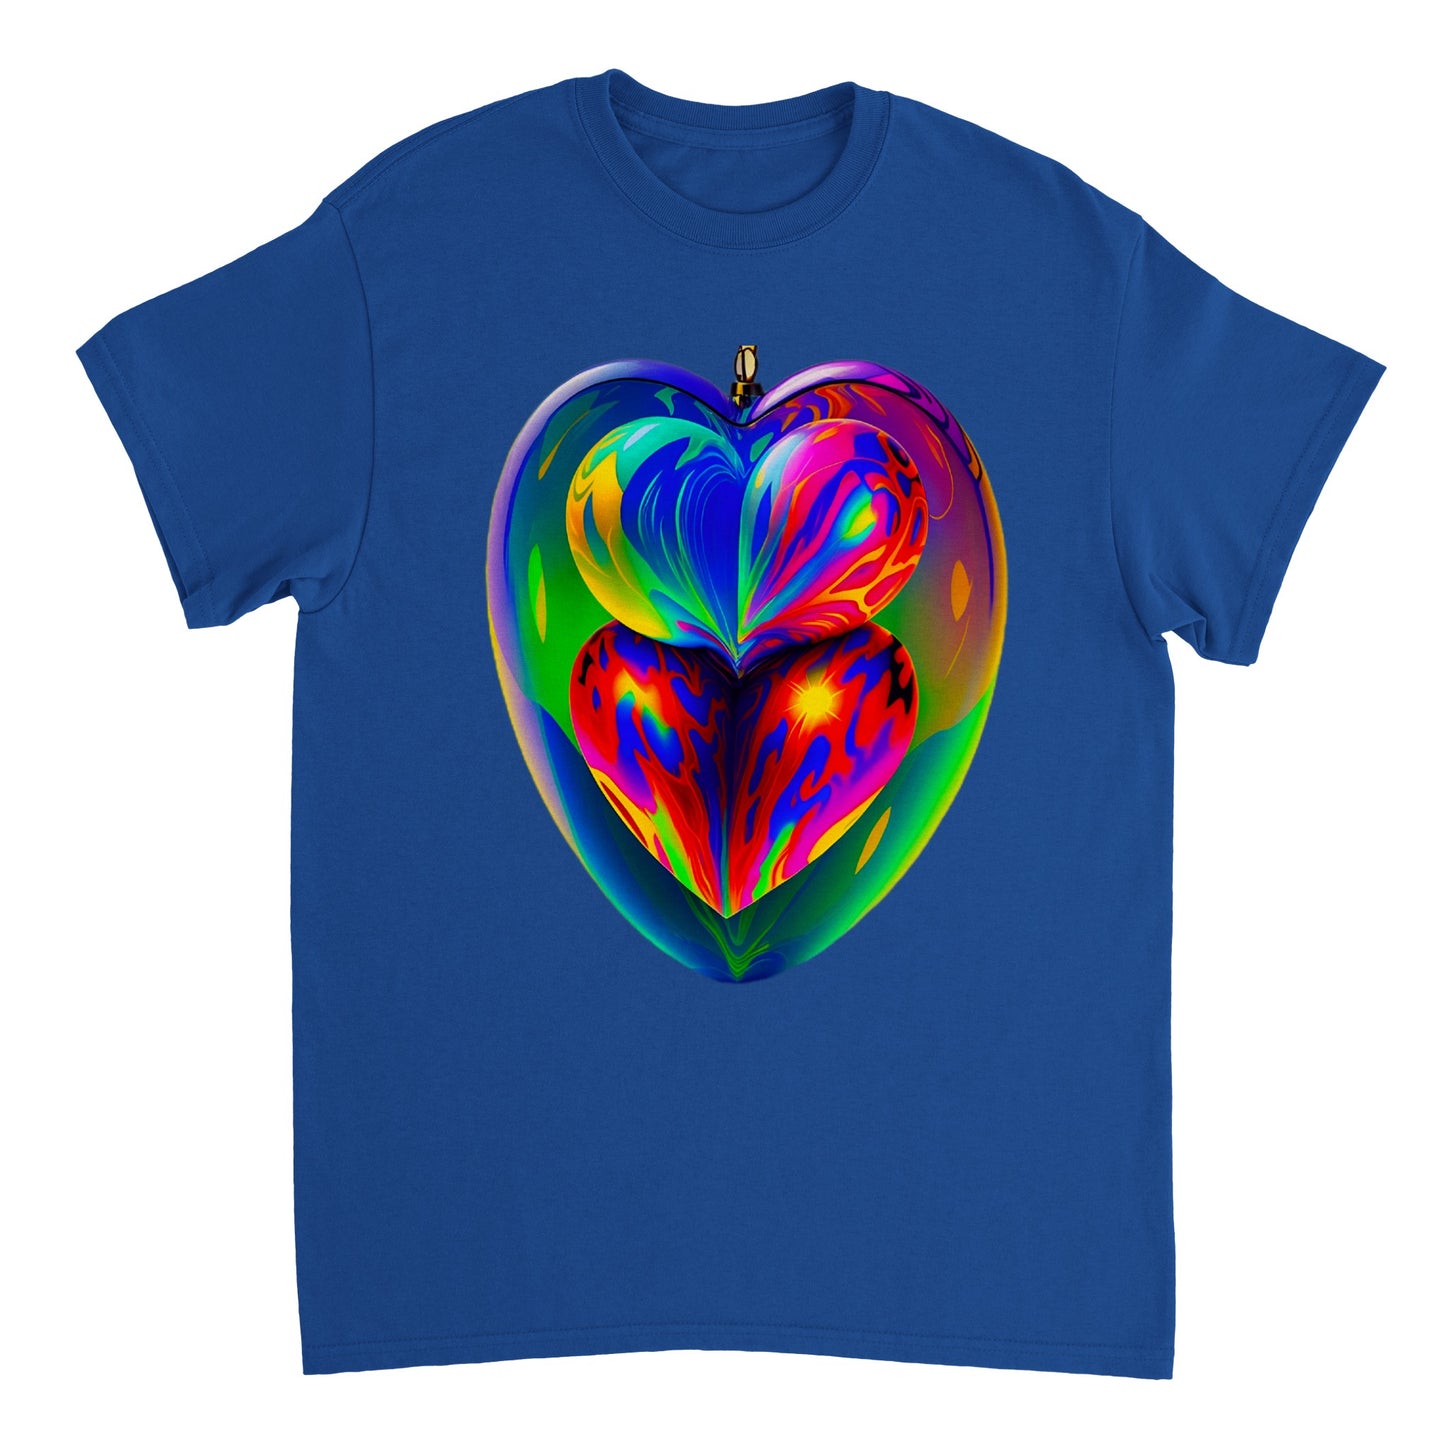 Love Heart - Heavyweight Unisex Crewneck T-shirt 89